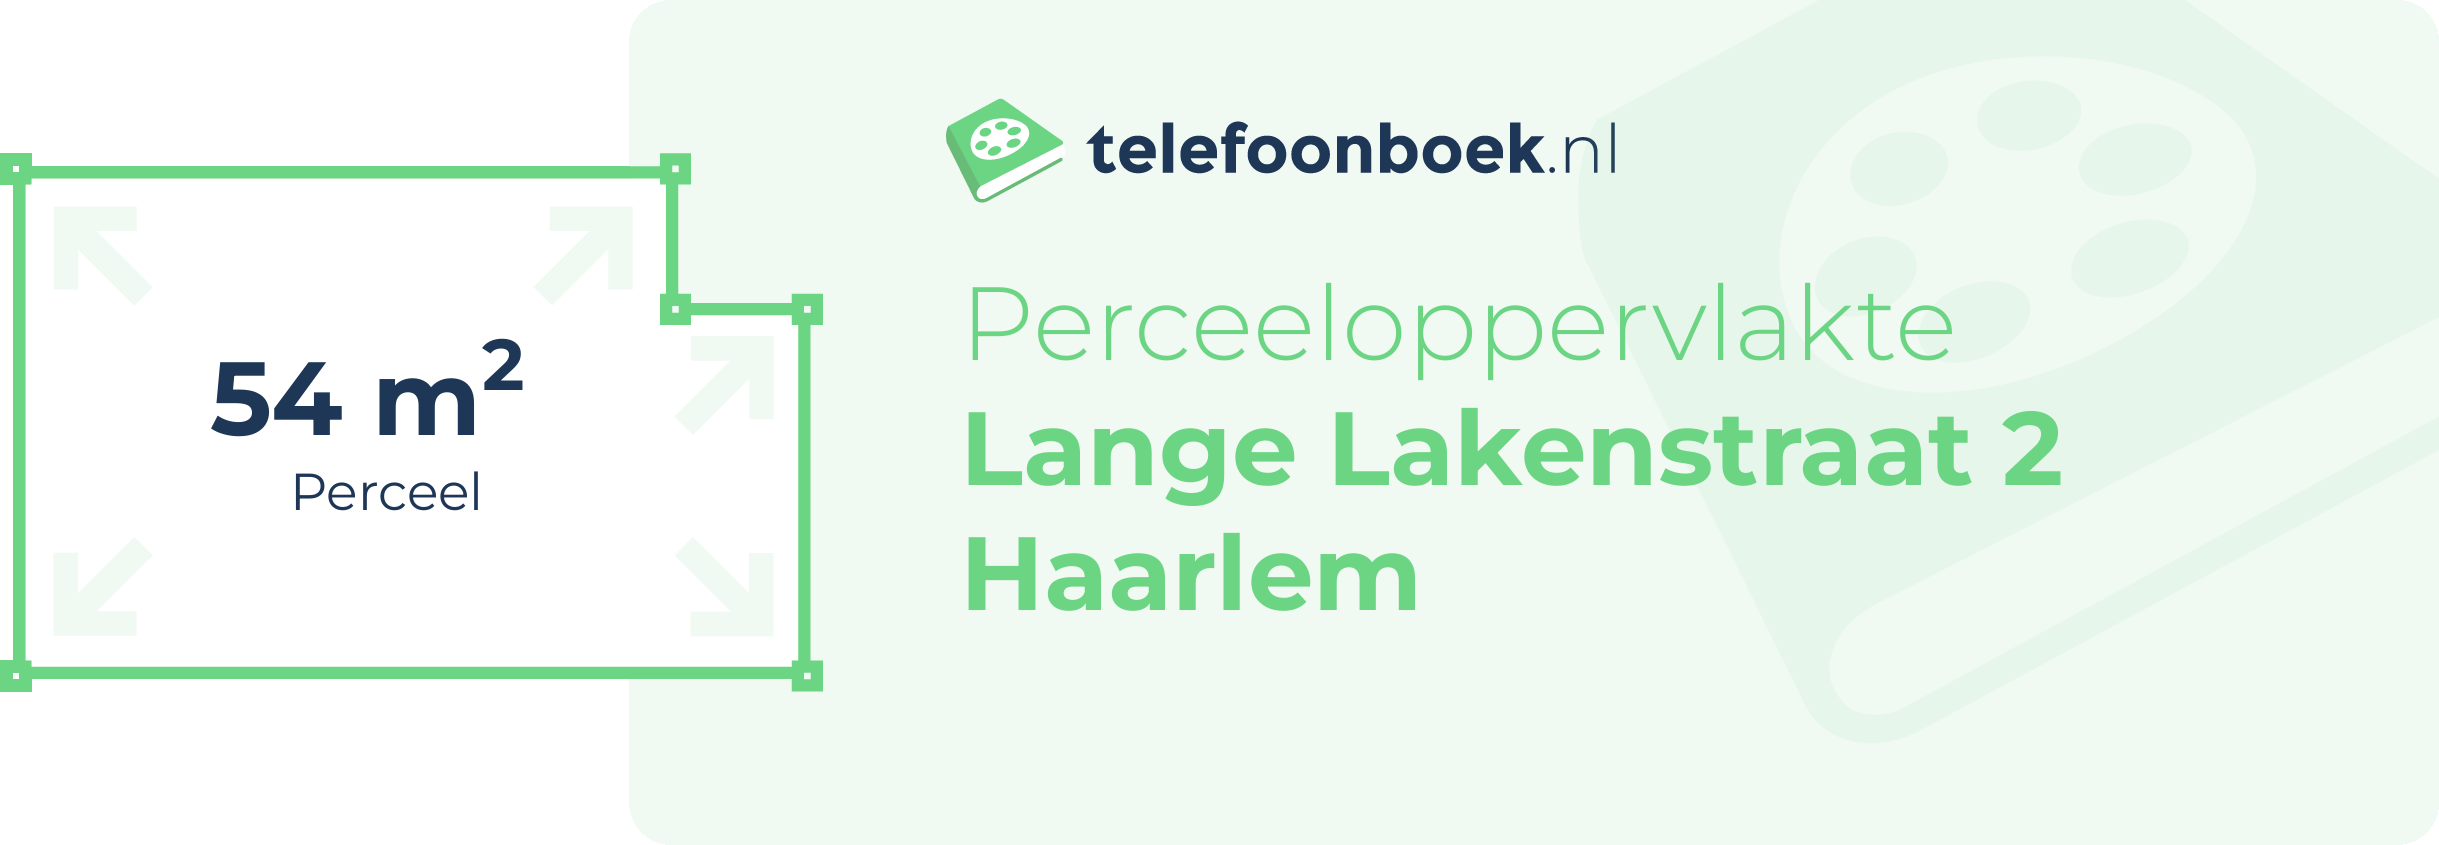 Perceeloppervlakte Lange Lakenstraat 2 Haarlem